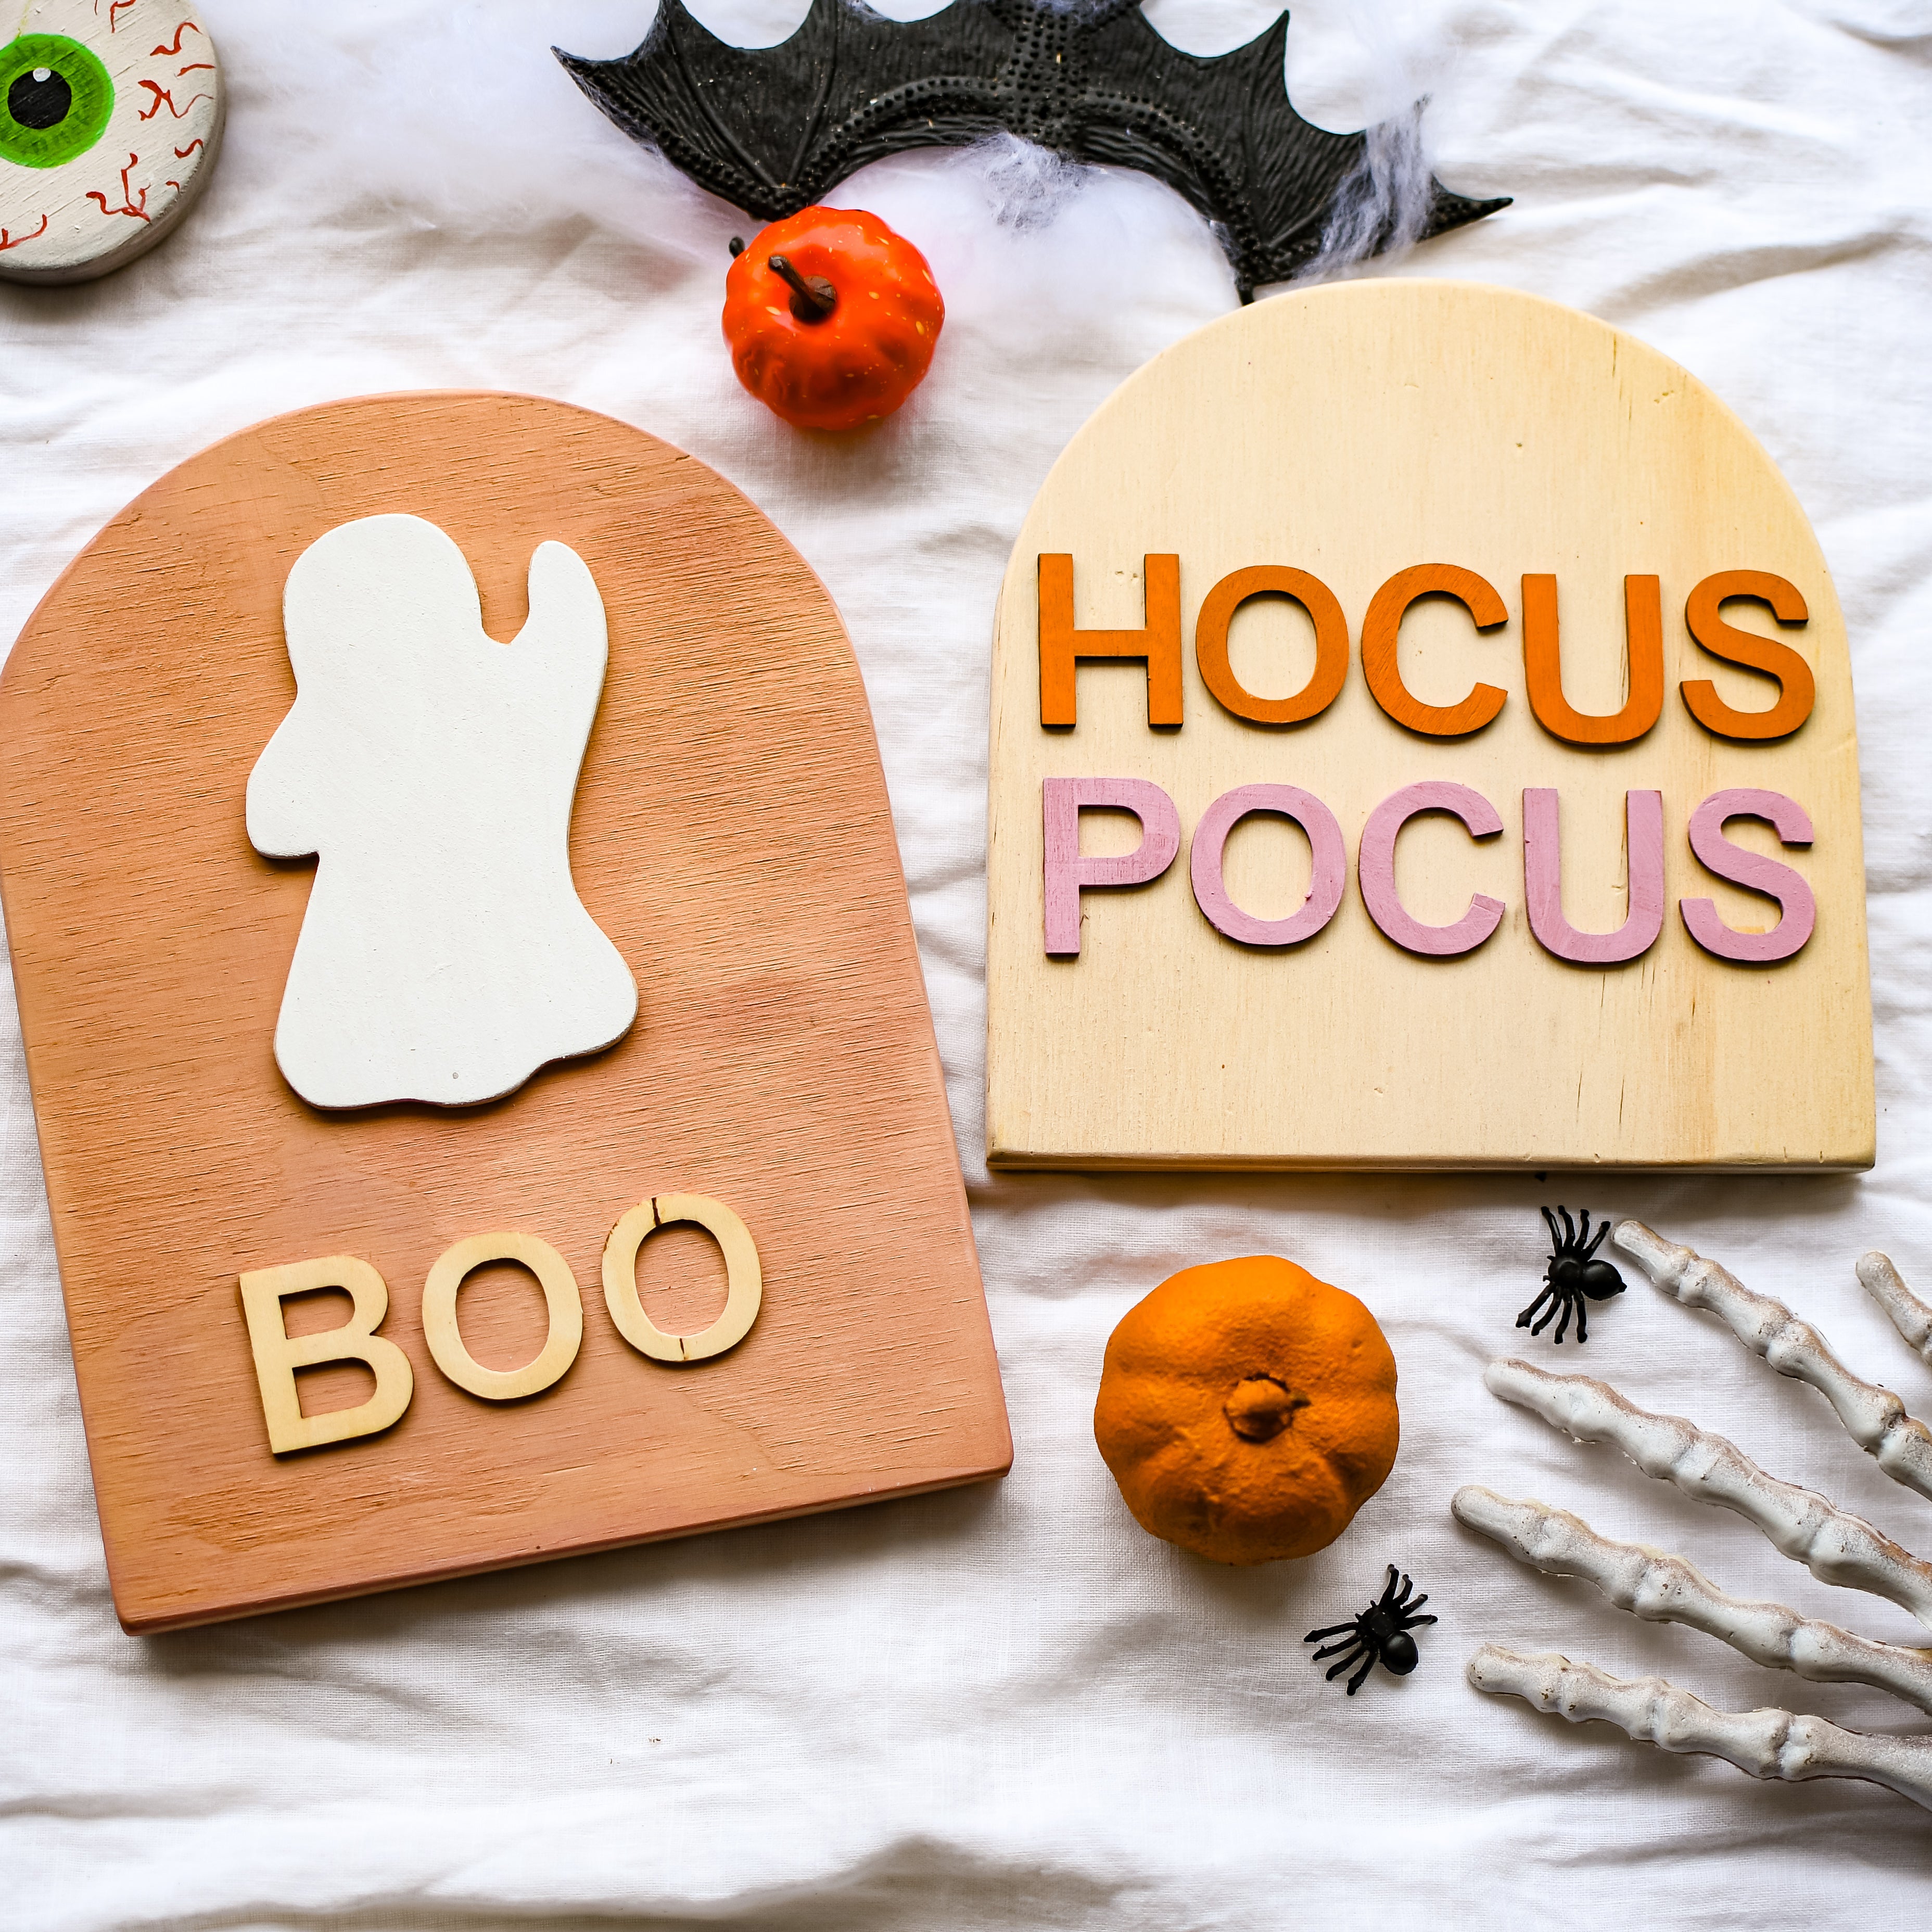 BOO Hocus Pocus Halloween Wooden Sign Set